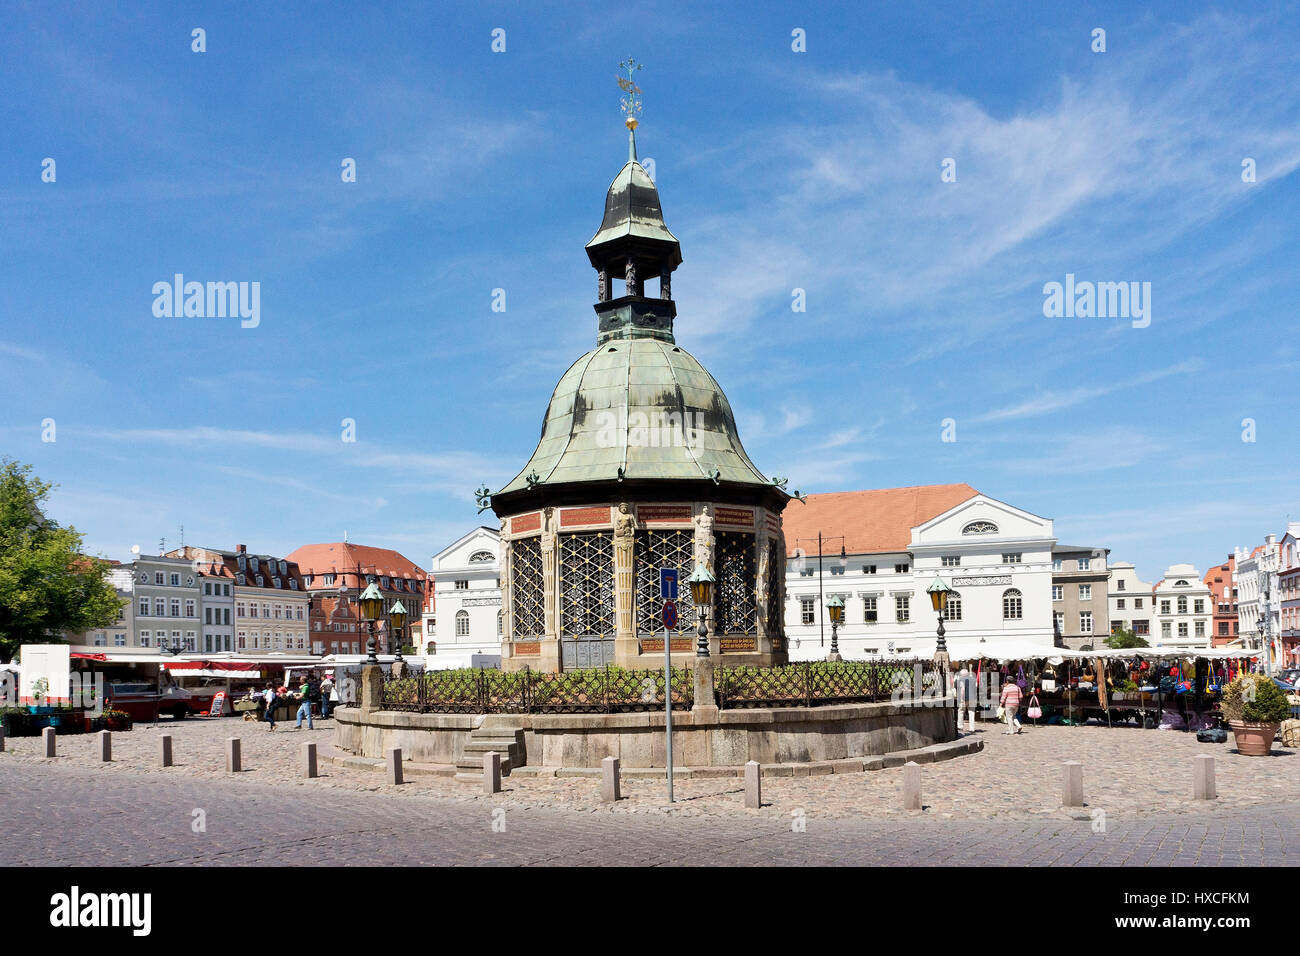 Marktplatz der Hansestadt Wismar mit dem Pavillon Wasser Art Market Square Wismar mit dem Pavillon Brunnen |, Marktplatz der Hansestadt Wis Stockfoto